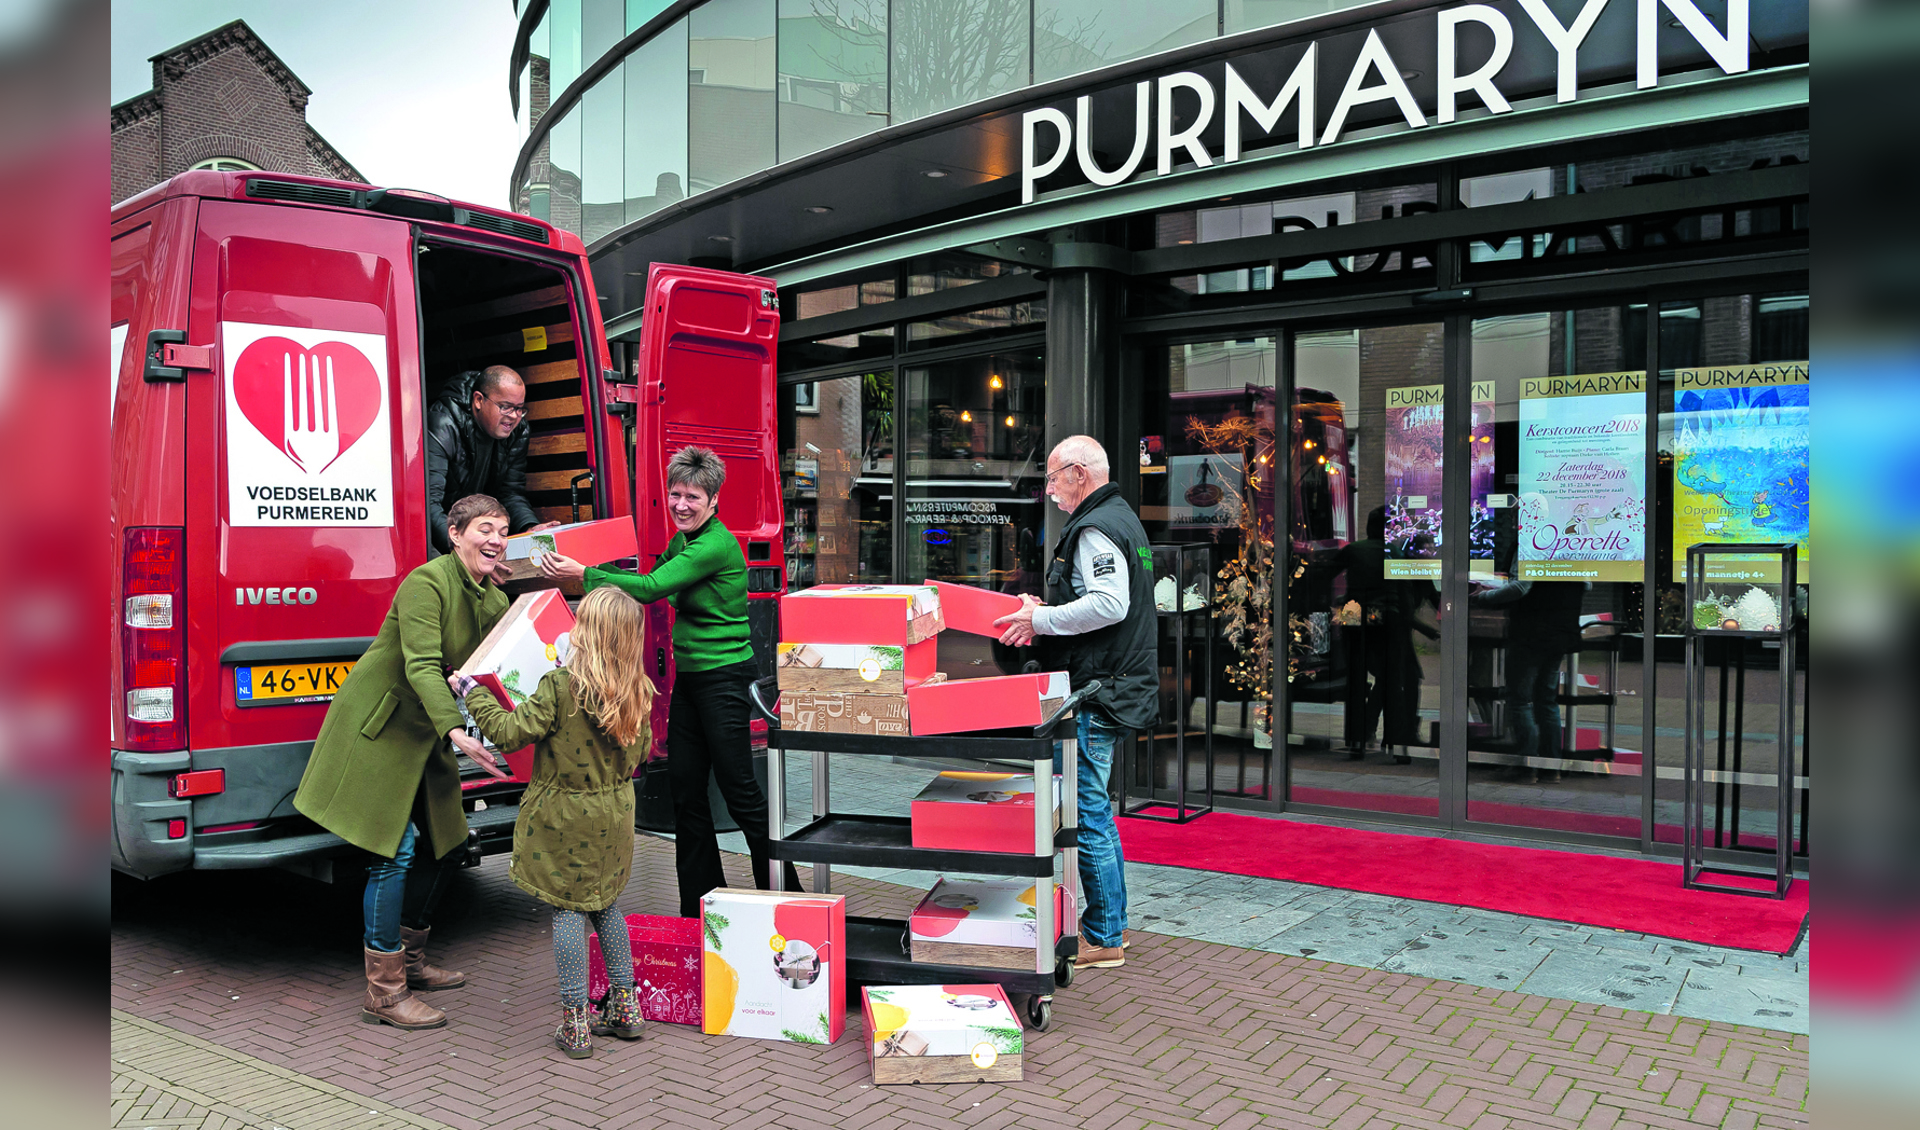 De kerstpakketten worden ingeladen in het busje van de voedselbank Purmerend. (Foto: Han Giskes)